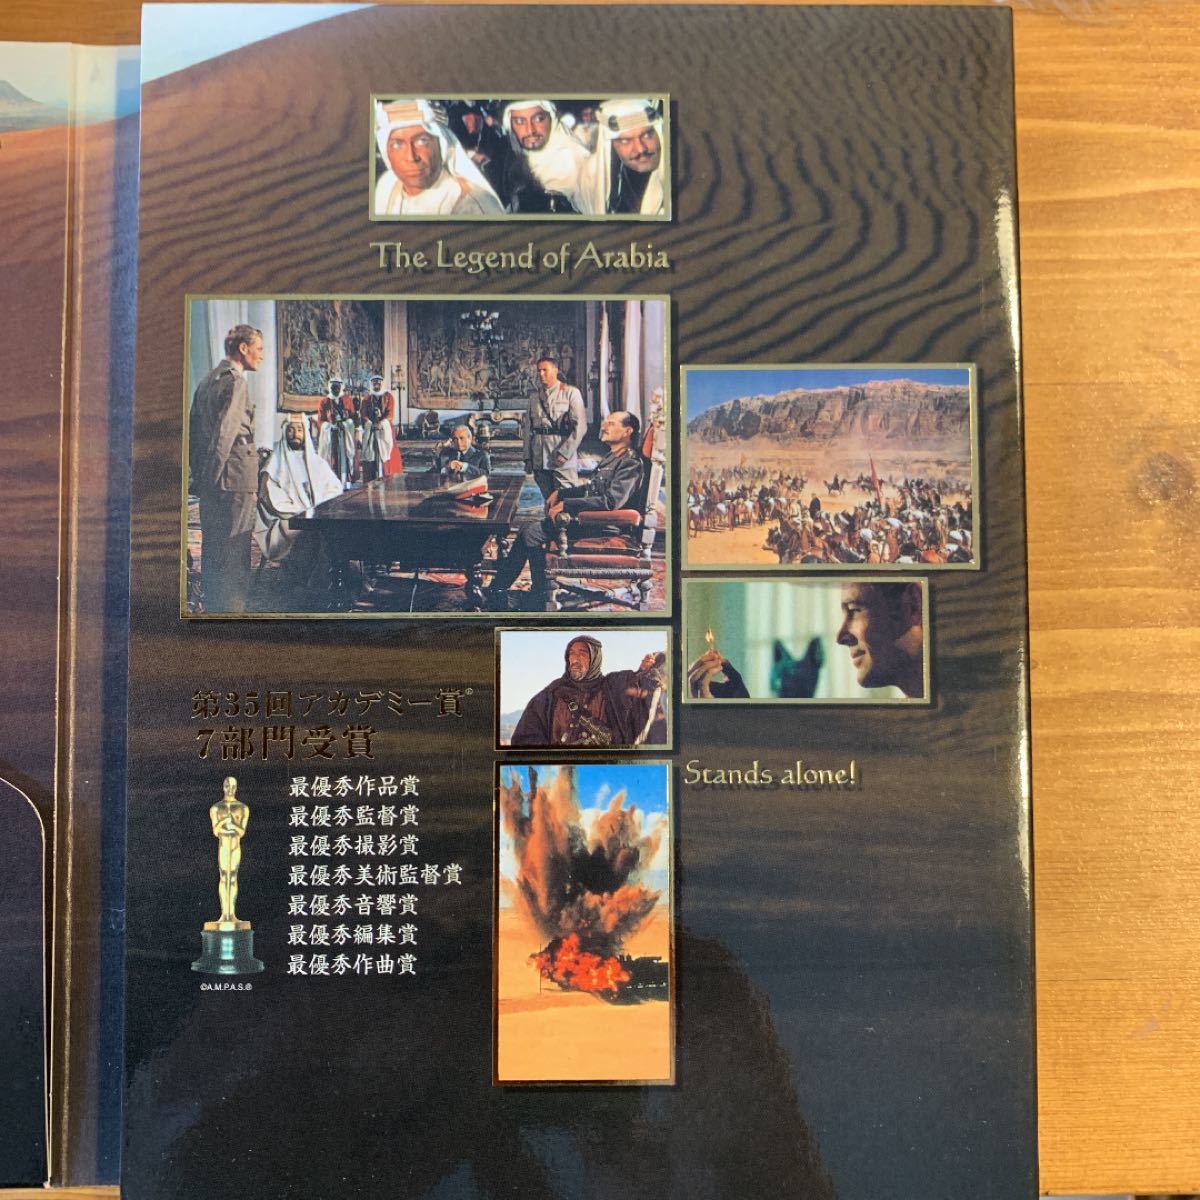 アラビアのロレンス 完全版 デラックスコレクターズエディション('62英)〈2… DVD